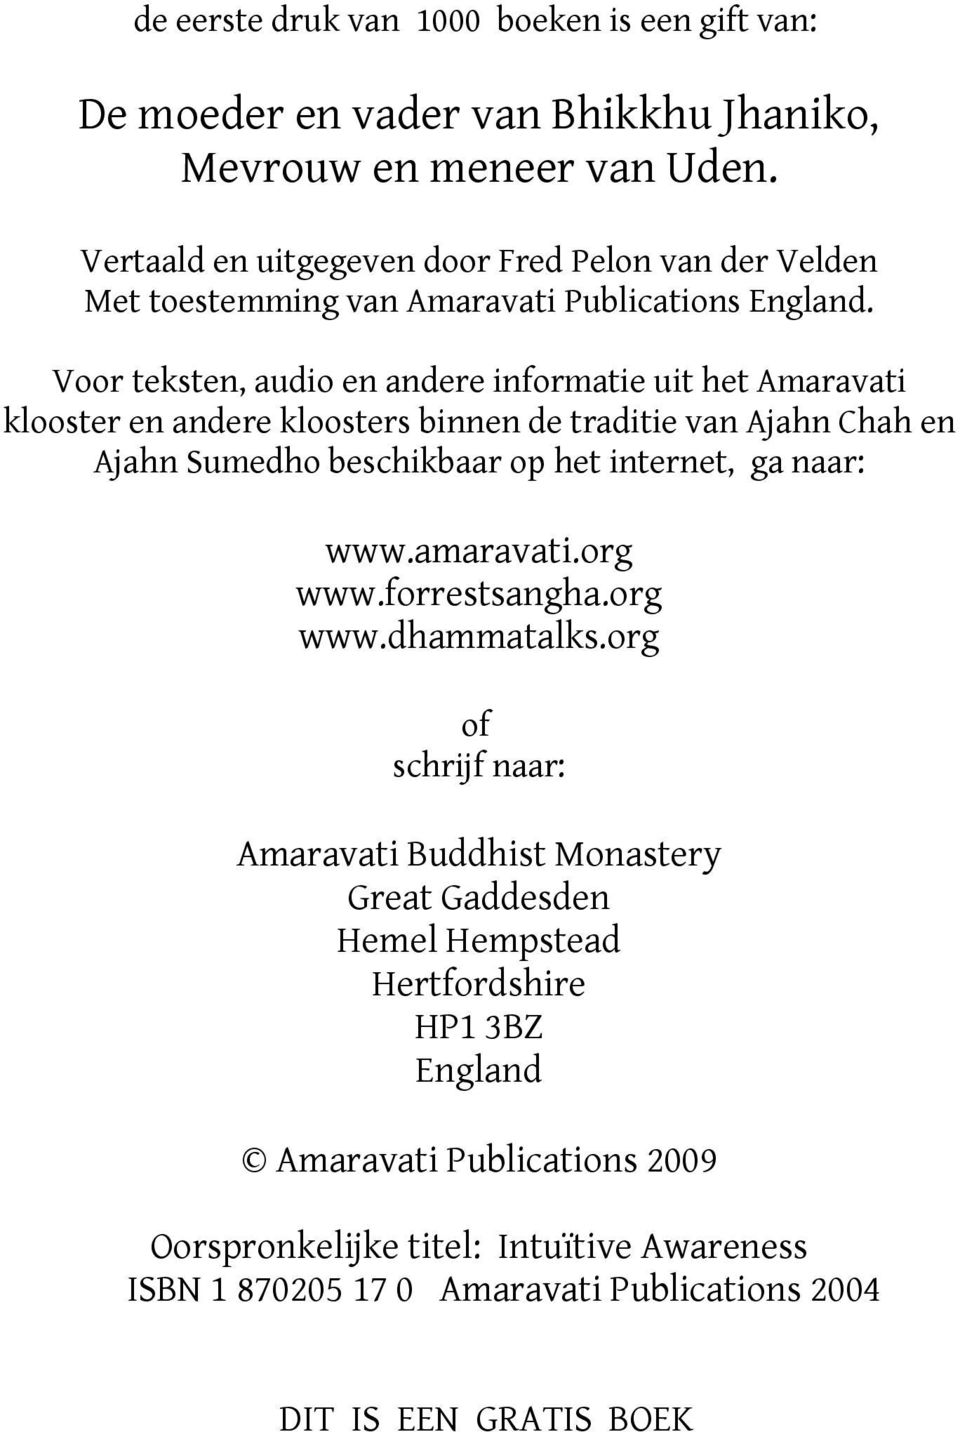 Voor teksten, audio en andere informatie uit het Amaravati klooster en andere kloosters binnen de traditie van Ajahn Chah en Ajahn Sumedho beschikbaar op het internet, ga naar: